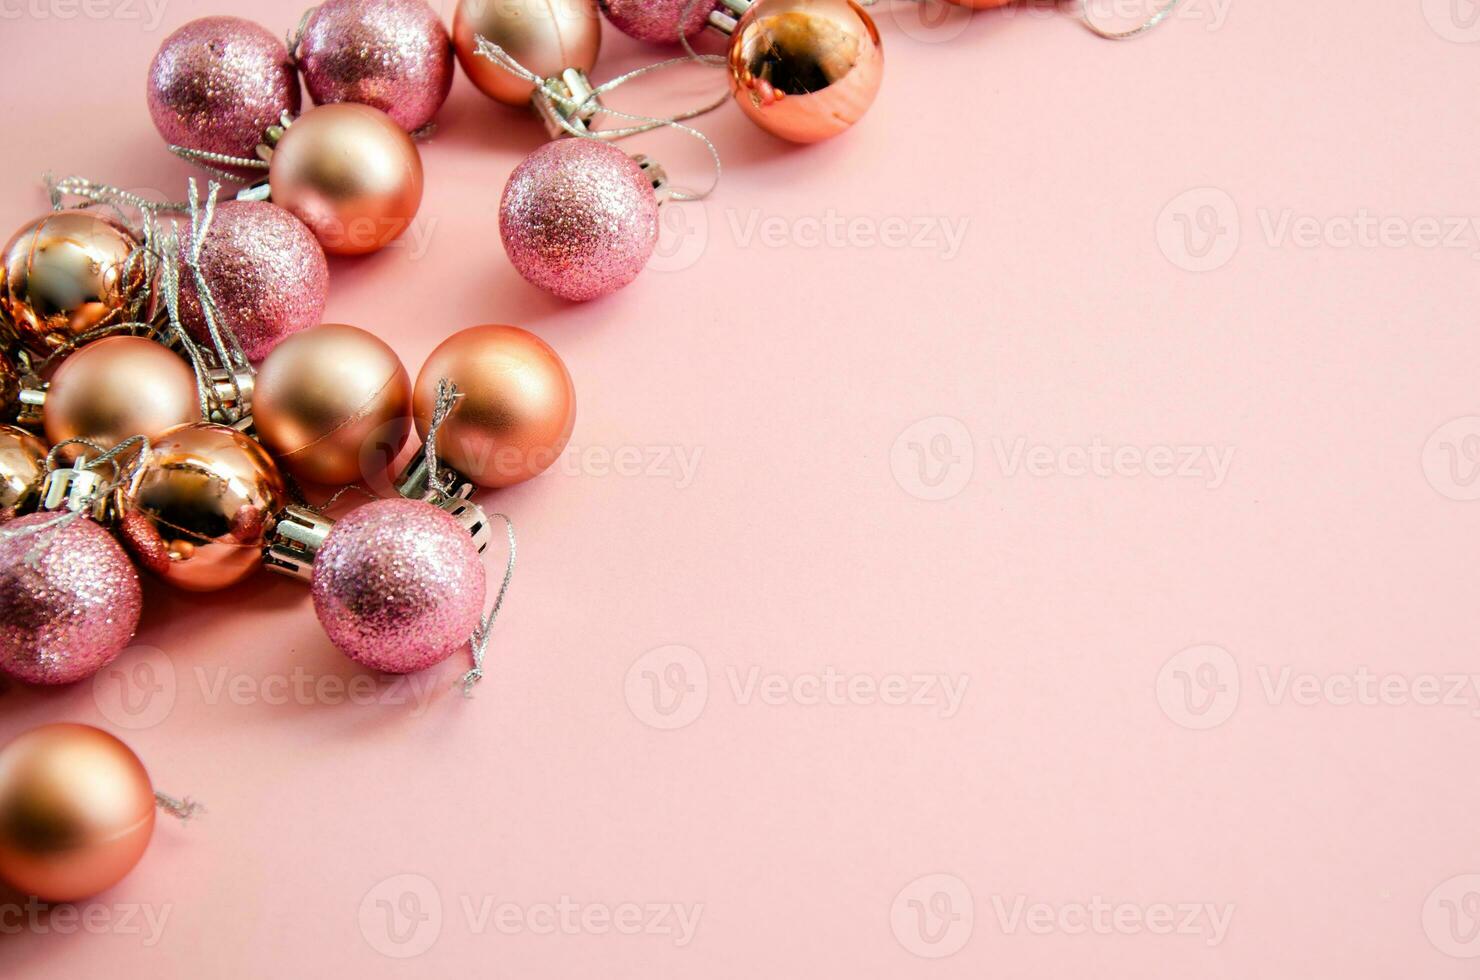 jul bollar för jul träd dekorationer. jul bakgrund för vykort foto